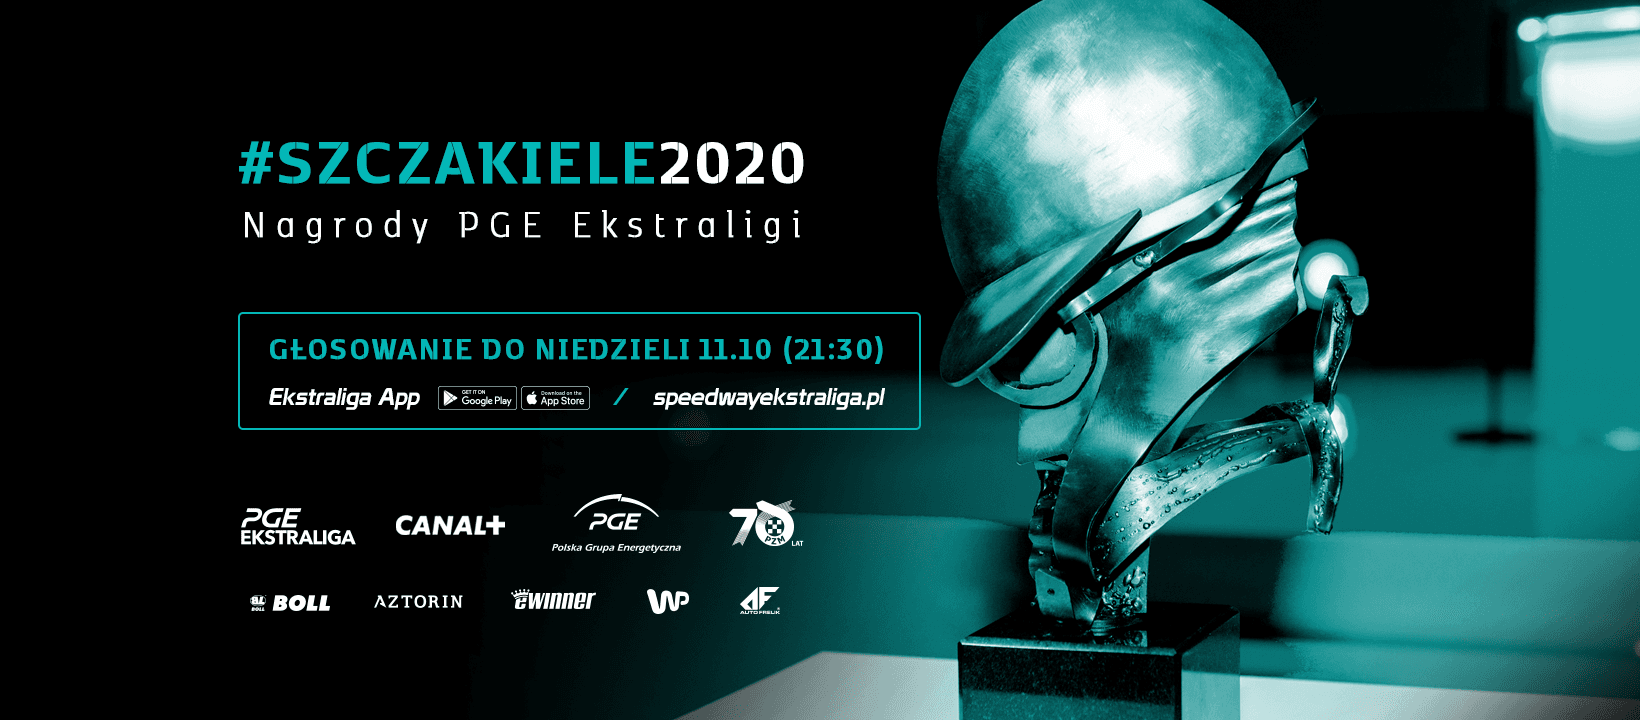 Szczakiele 2020 – nagrody PGE Ekstraligi: Weterani w walce o tytuł najlepszego zagranicznego zawodnika